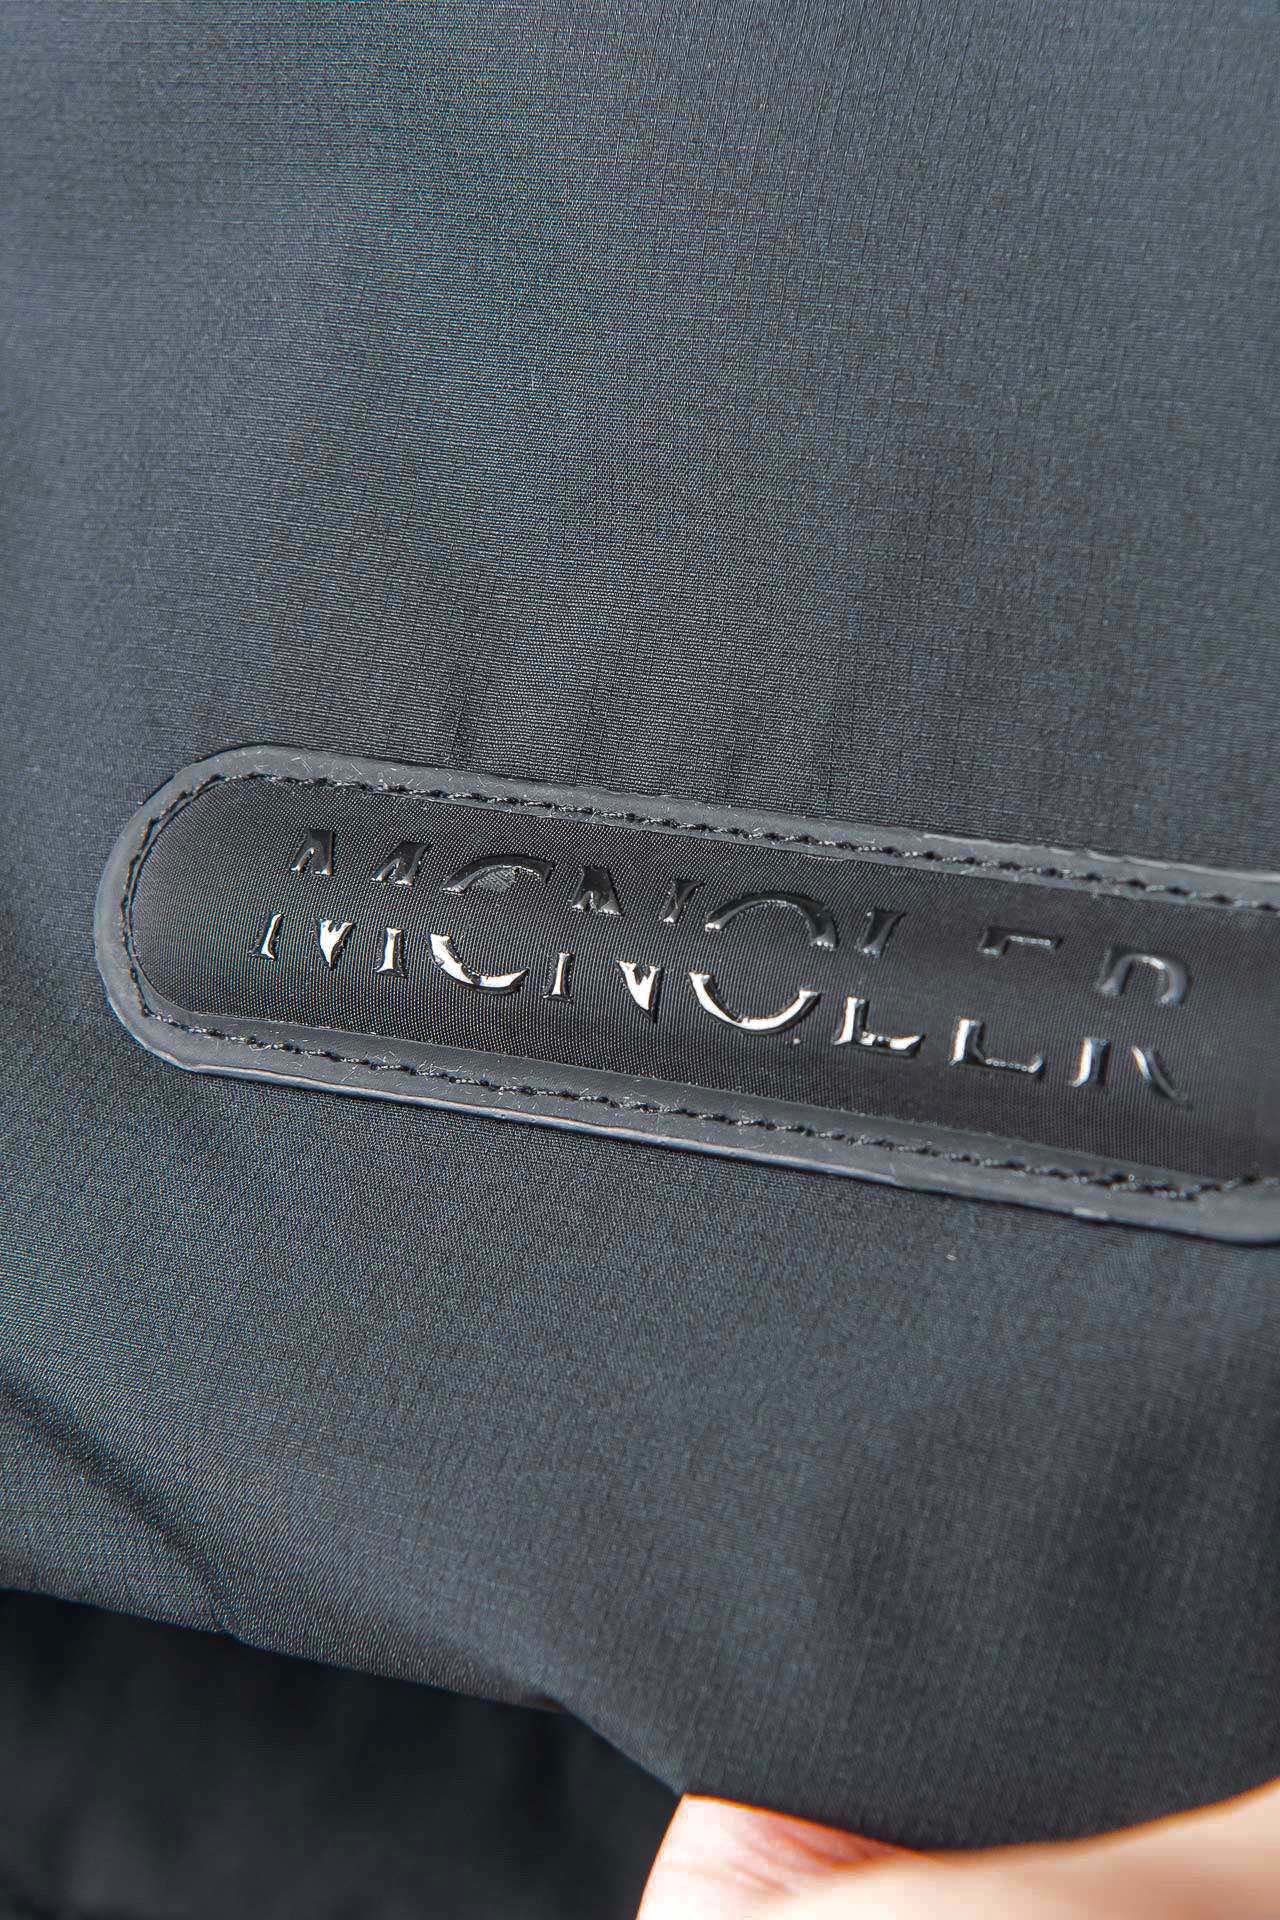 New#！！！️黑标法系mon薄款夹克外套羽绒服顶级户外商务系列！！上身就是很有品的时尚绅士DWR超强防